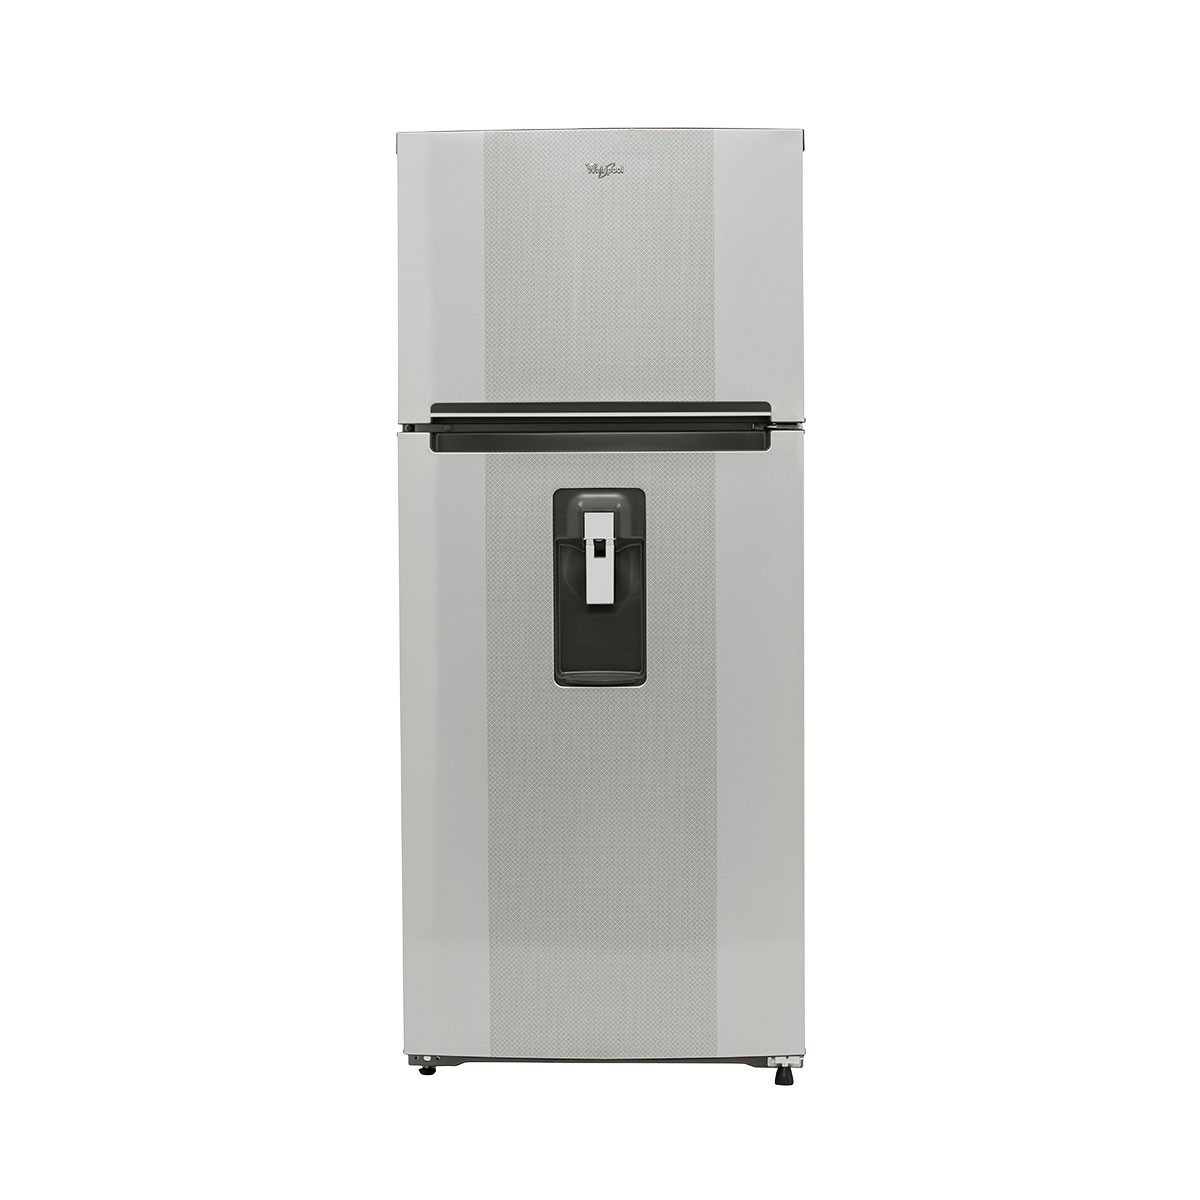 Refrigerador silver c/despachador 16 ft³